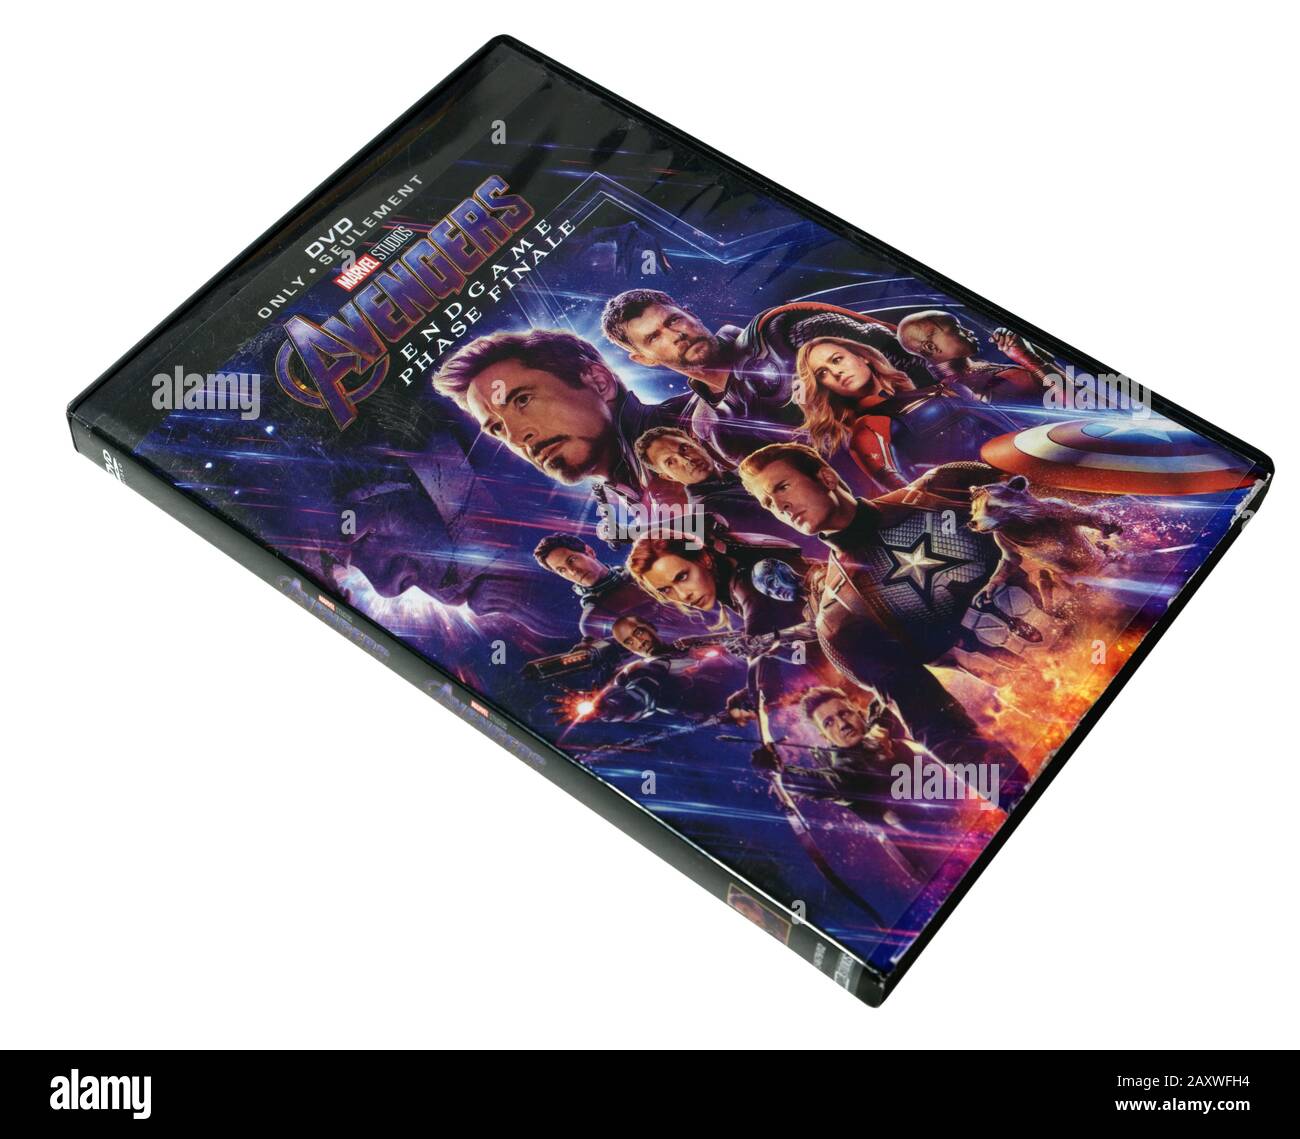 Avengers Endgame film on DVD Stock Photo